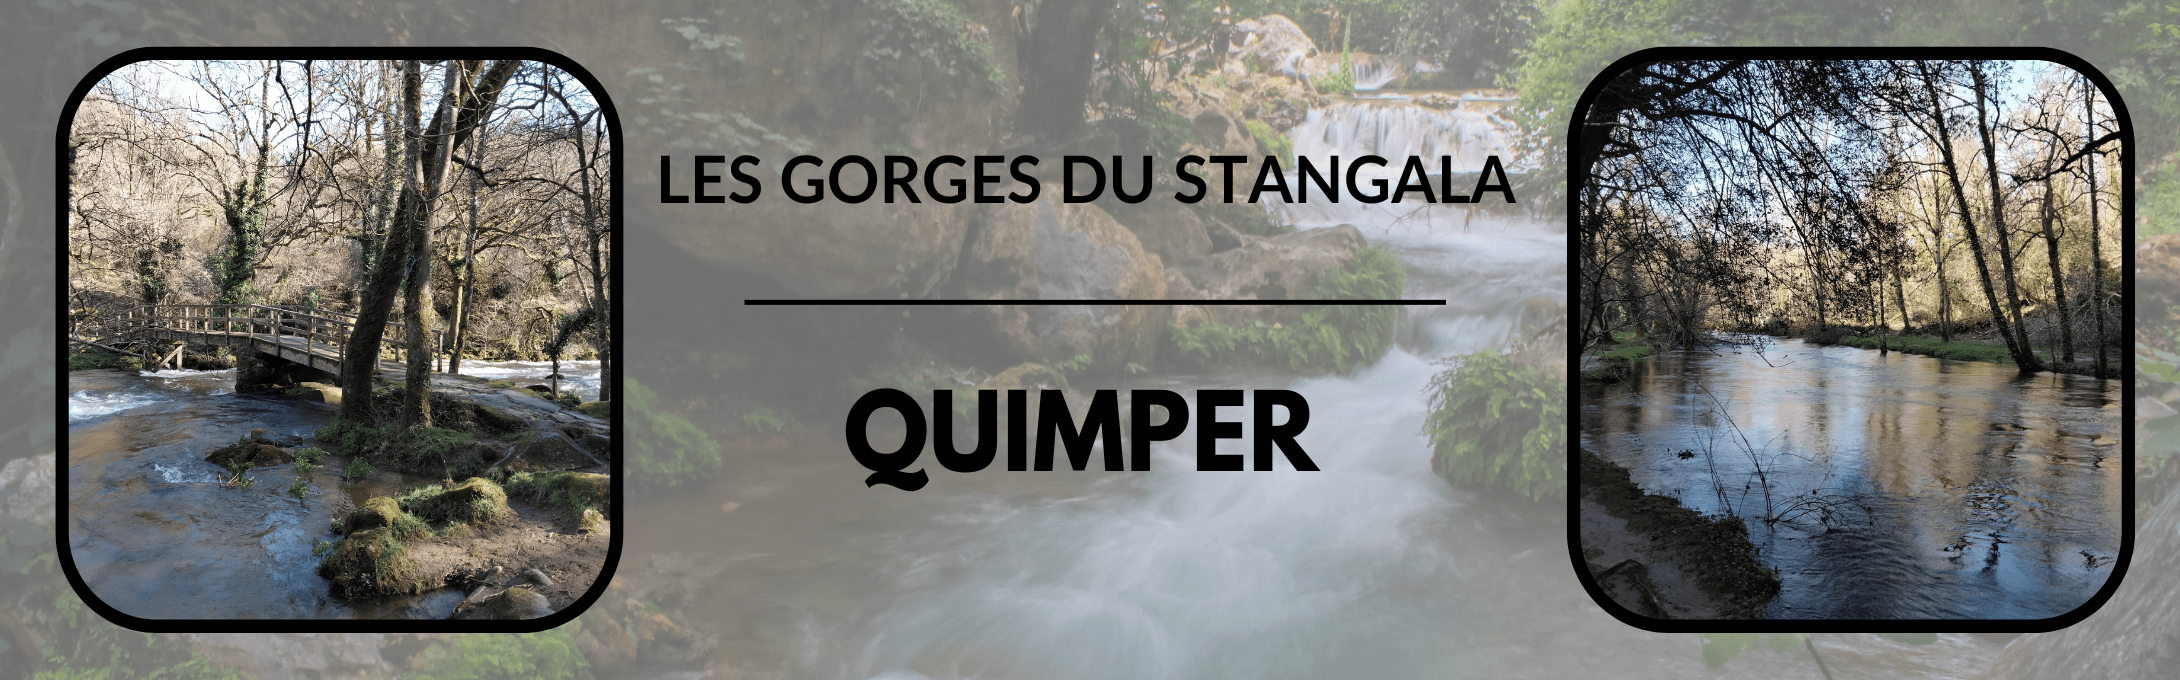 Les Gorges du Stangala à Quimper